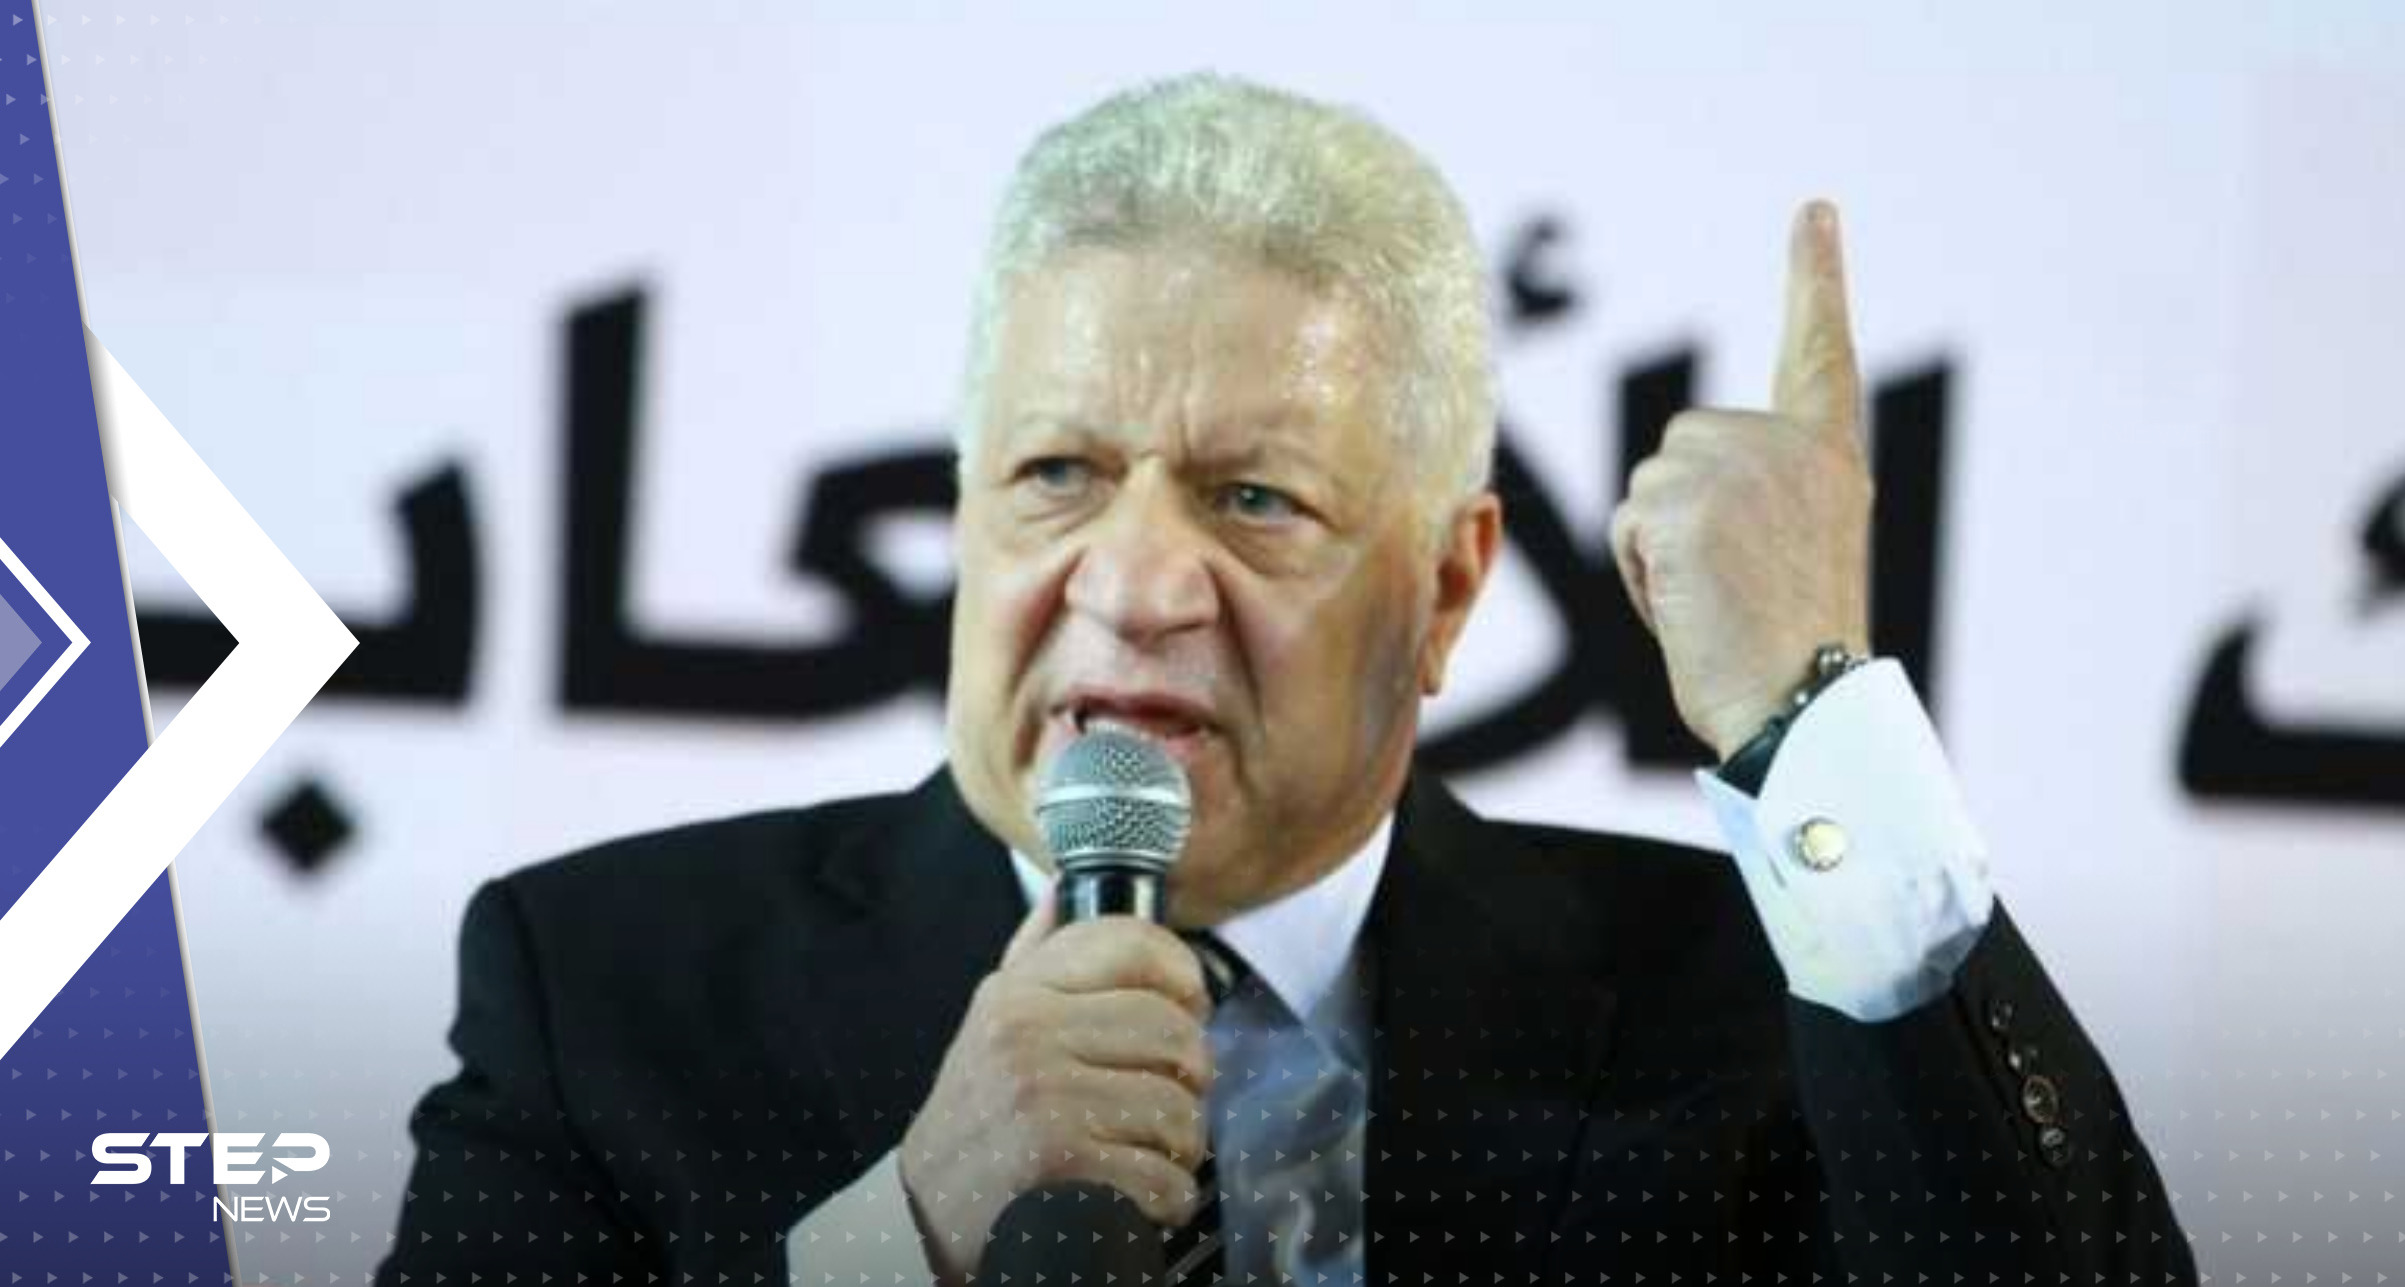 "رئيس الأهلي يسجن رئيس الزمالك"..أول رد فعل لمرتضى منصور بعد الحكم القضائي